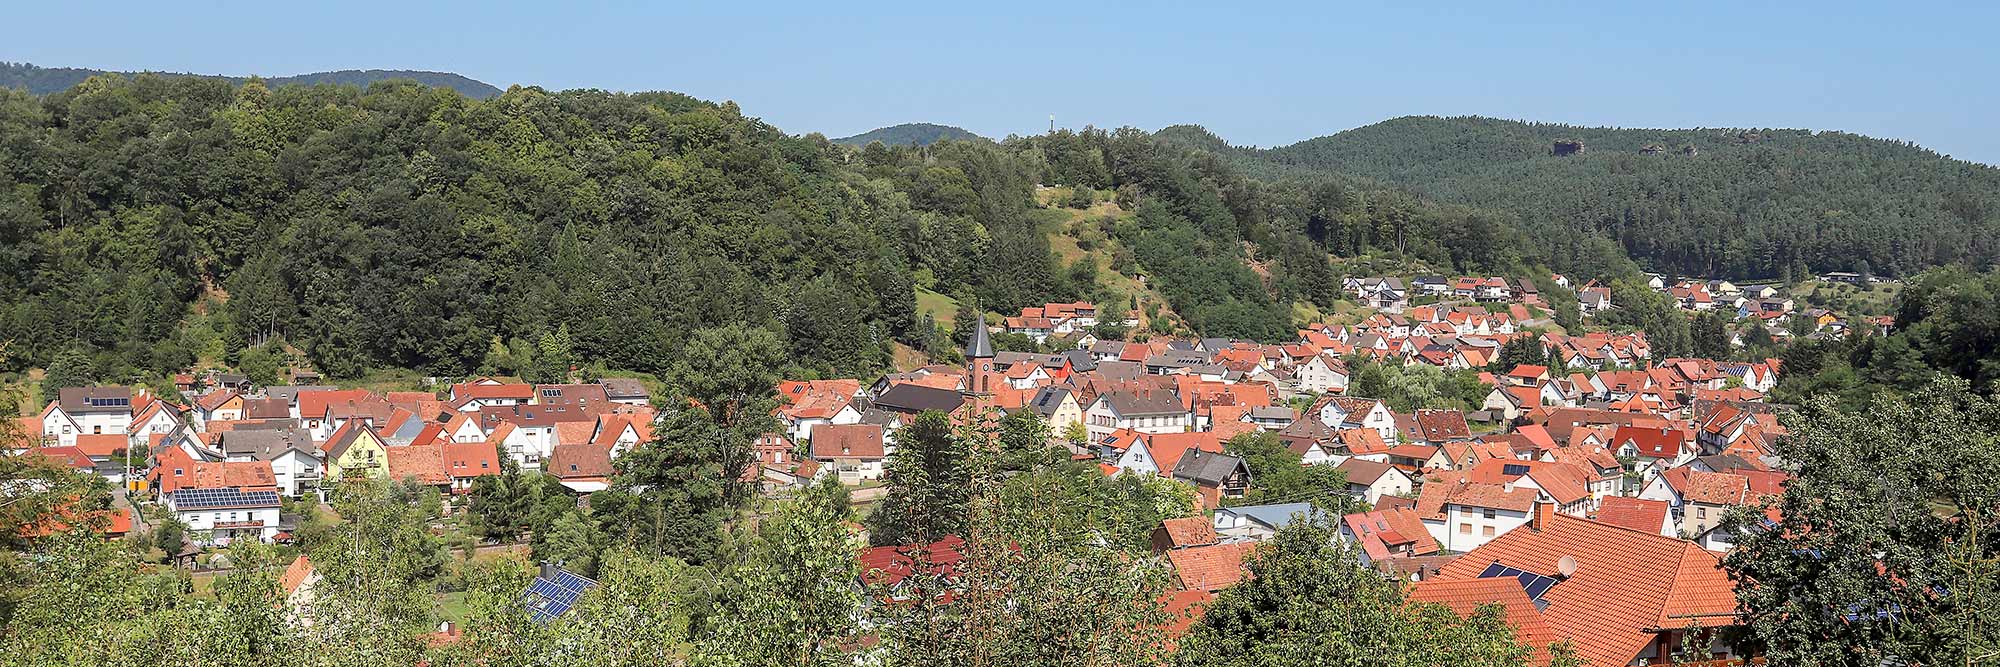 Blick auf Bruchweiler-Bärenbach